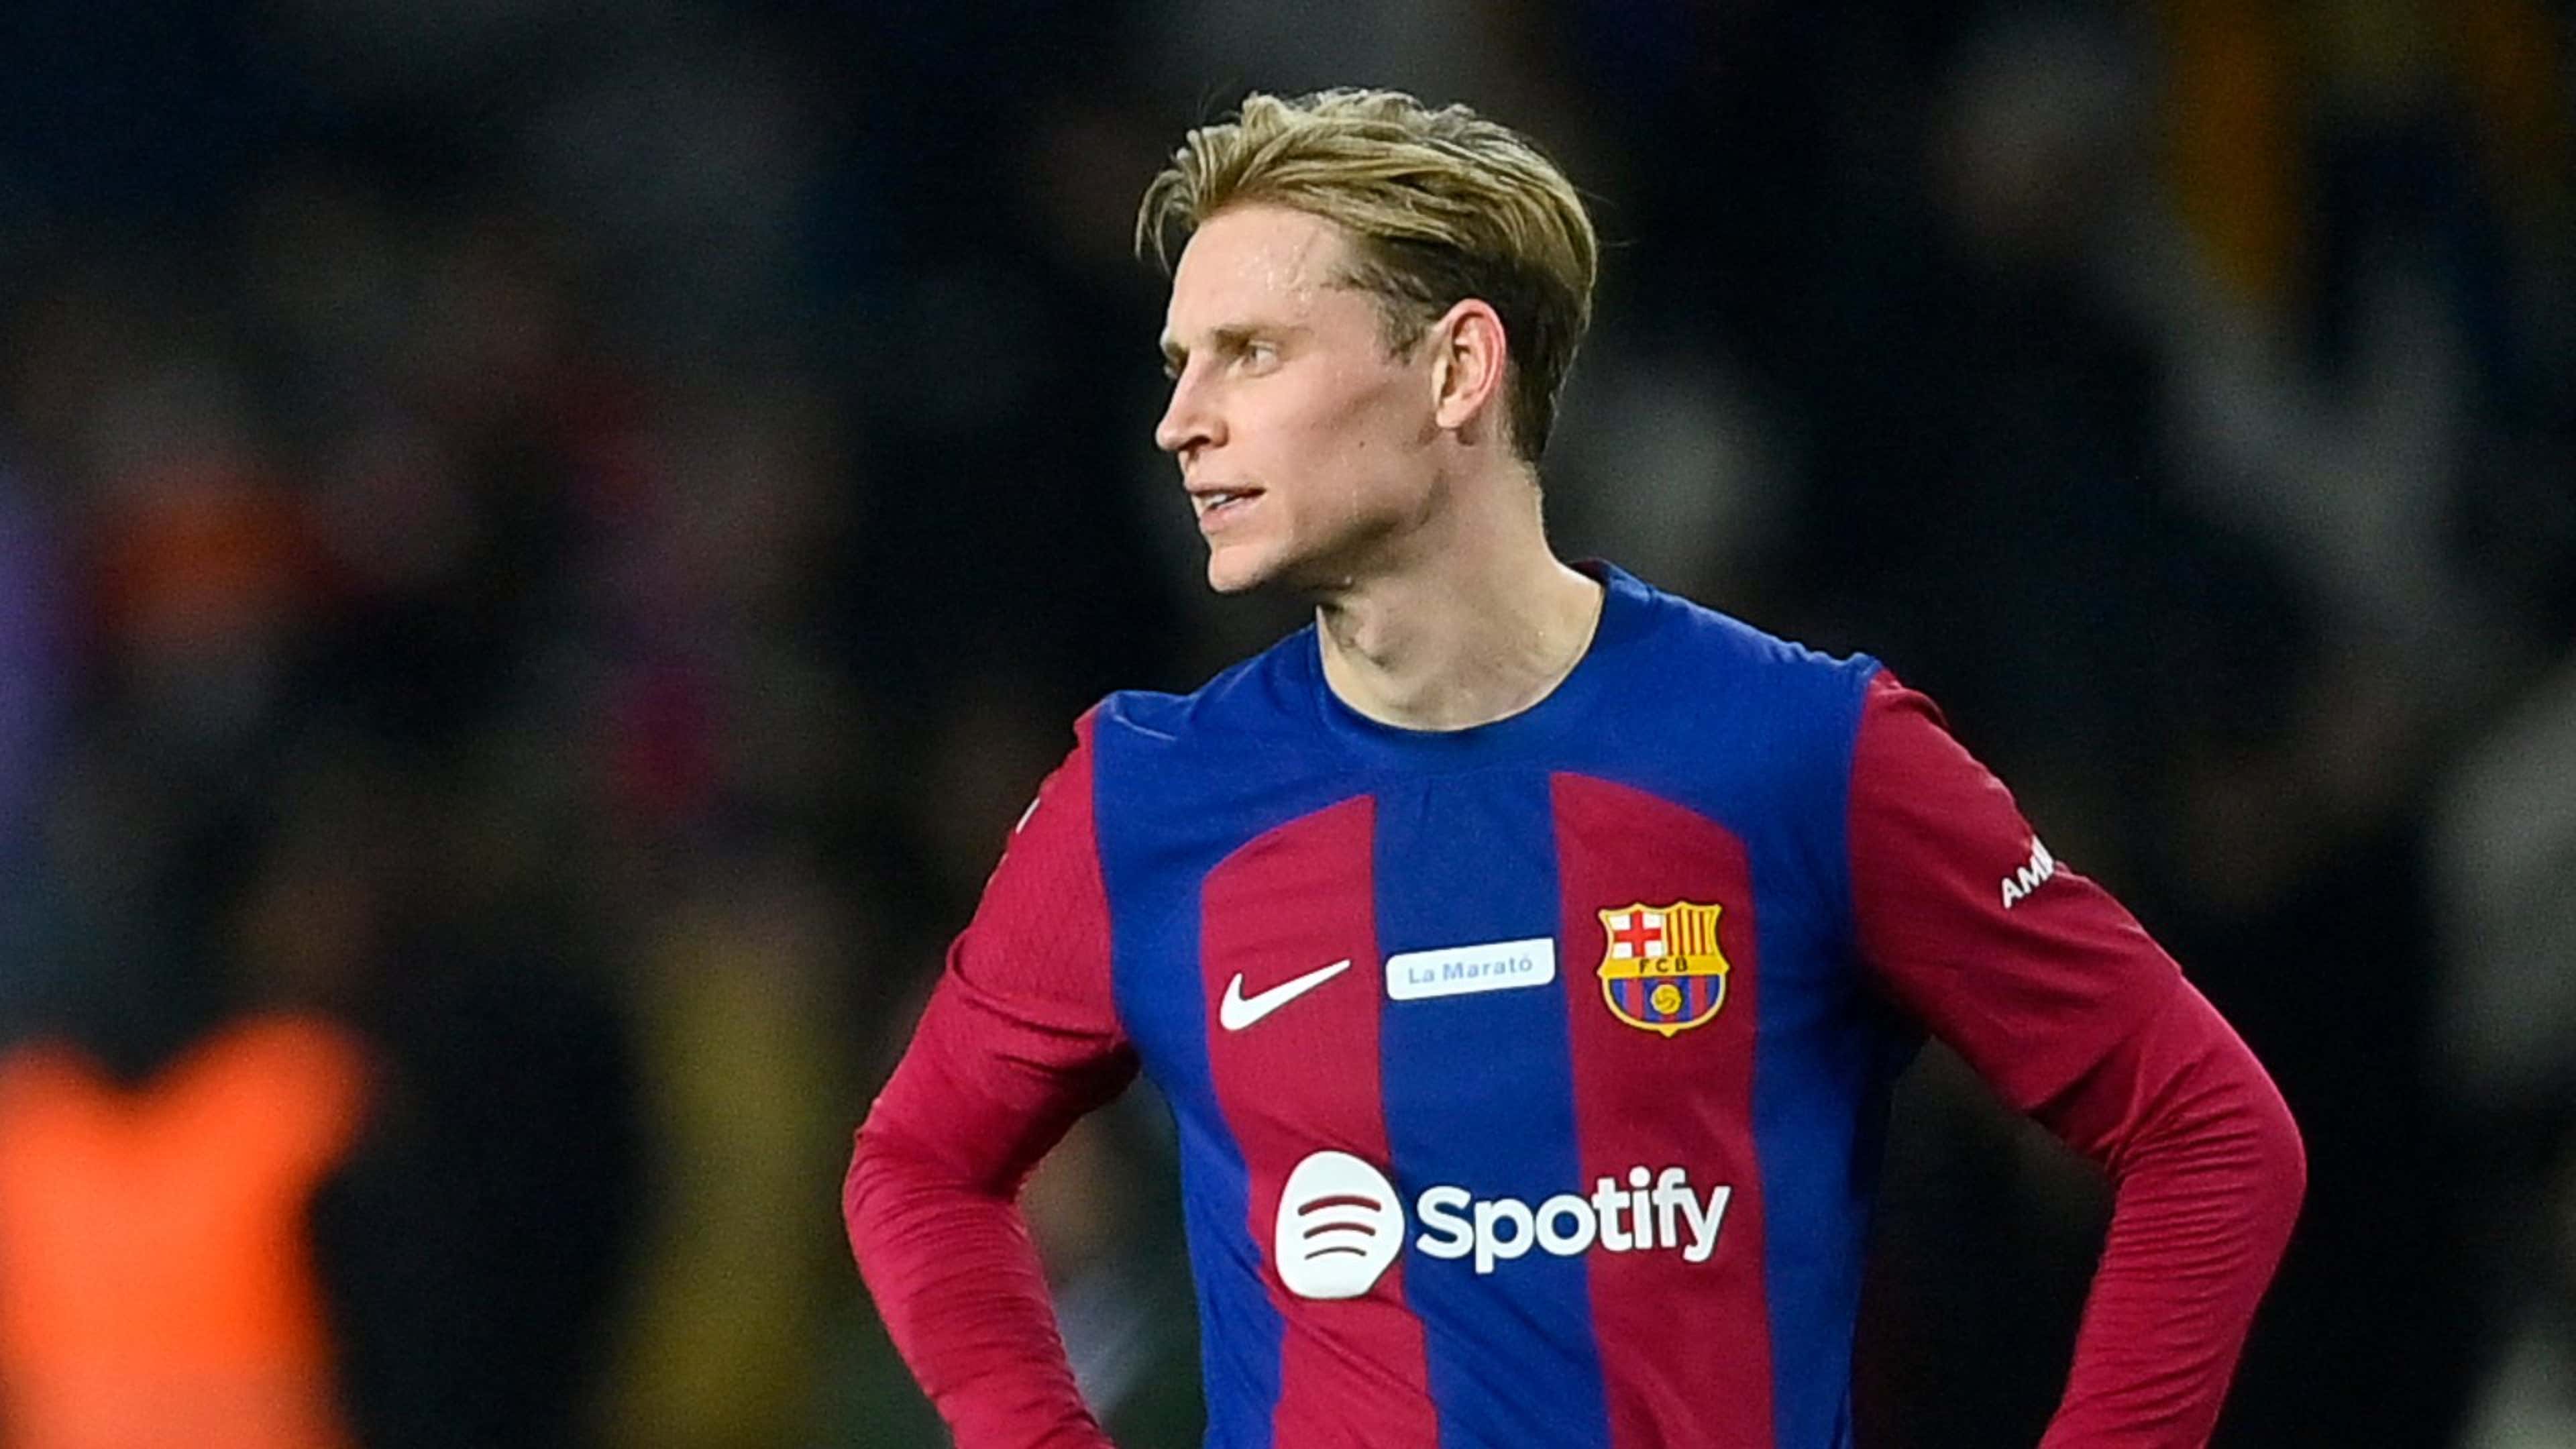 Barcelona Sets Frenkie de Jong’s Transfer Fee at 100 Million Euros